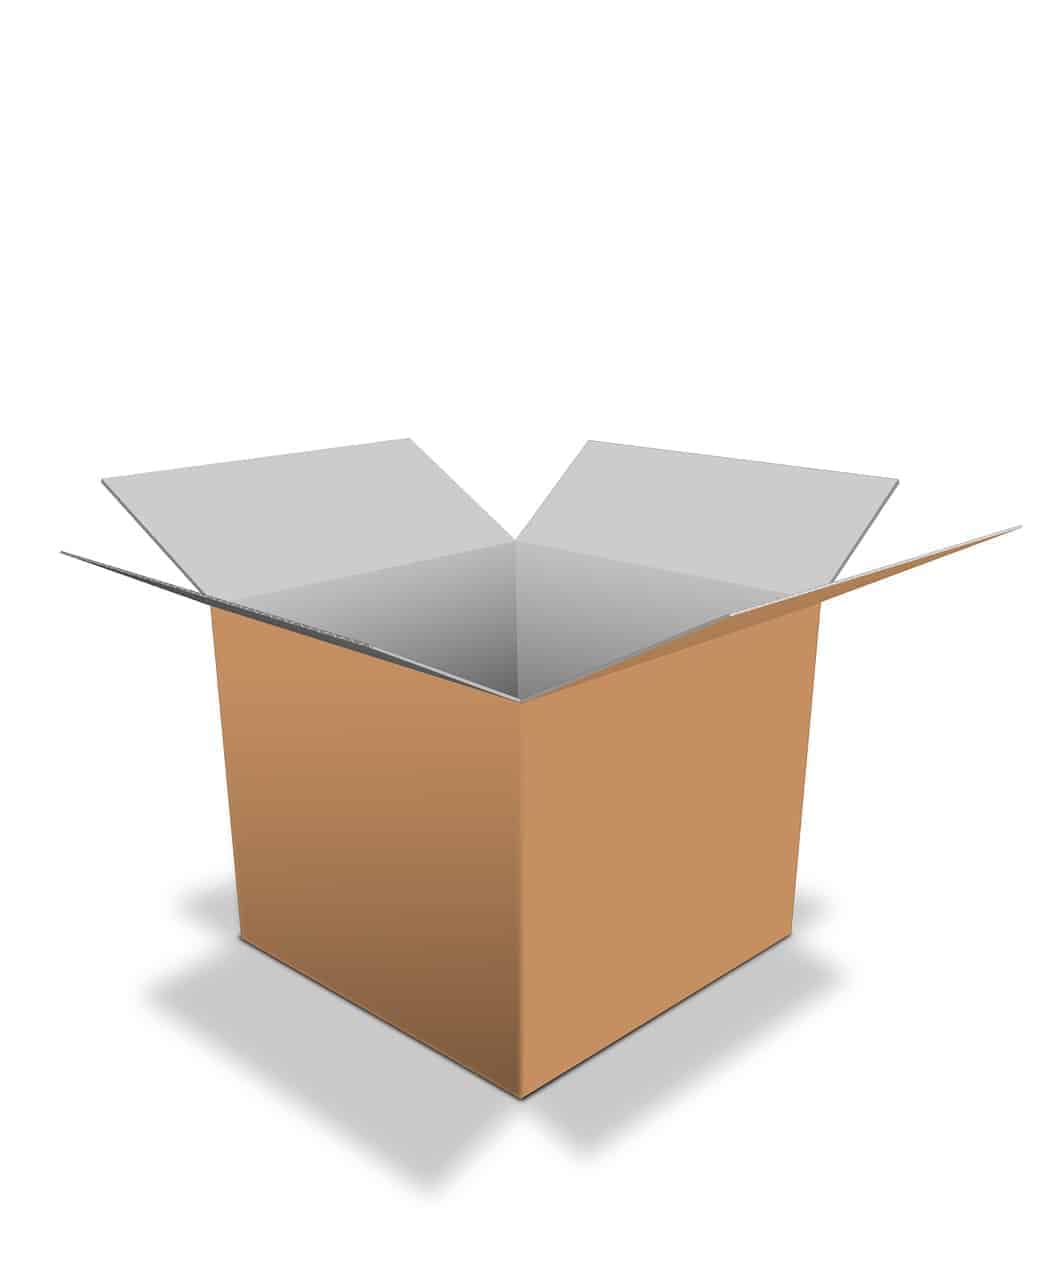 Plain cardboard box